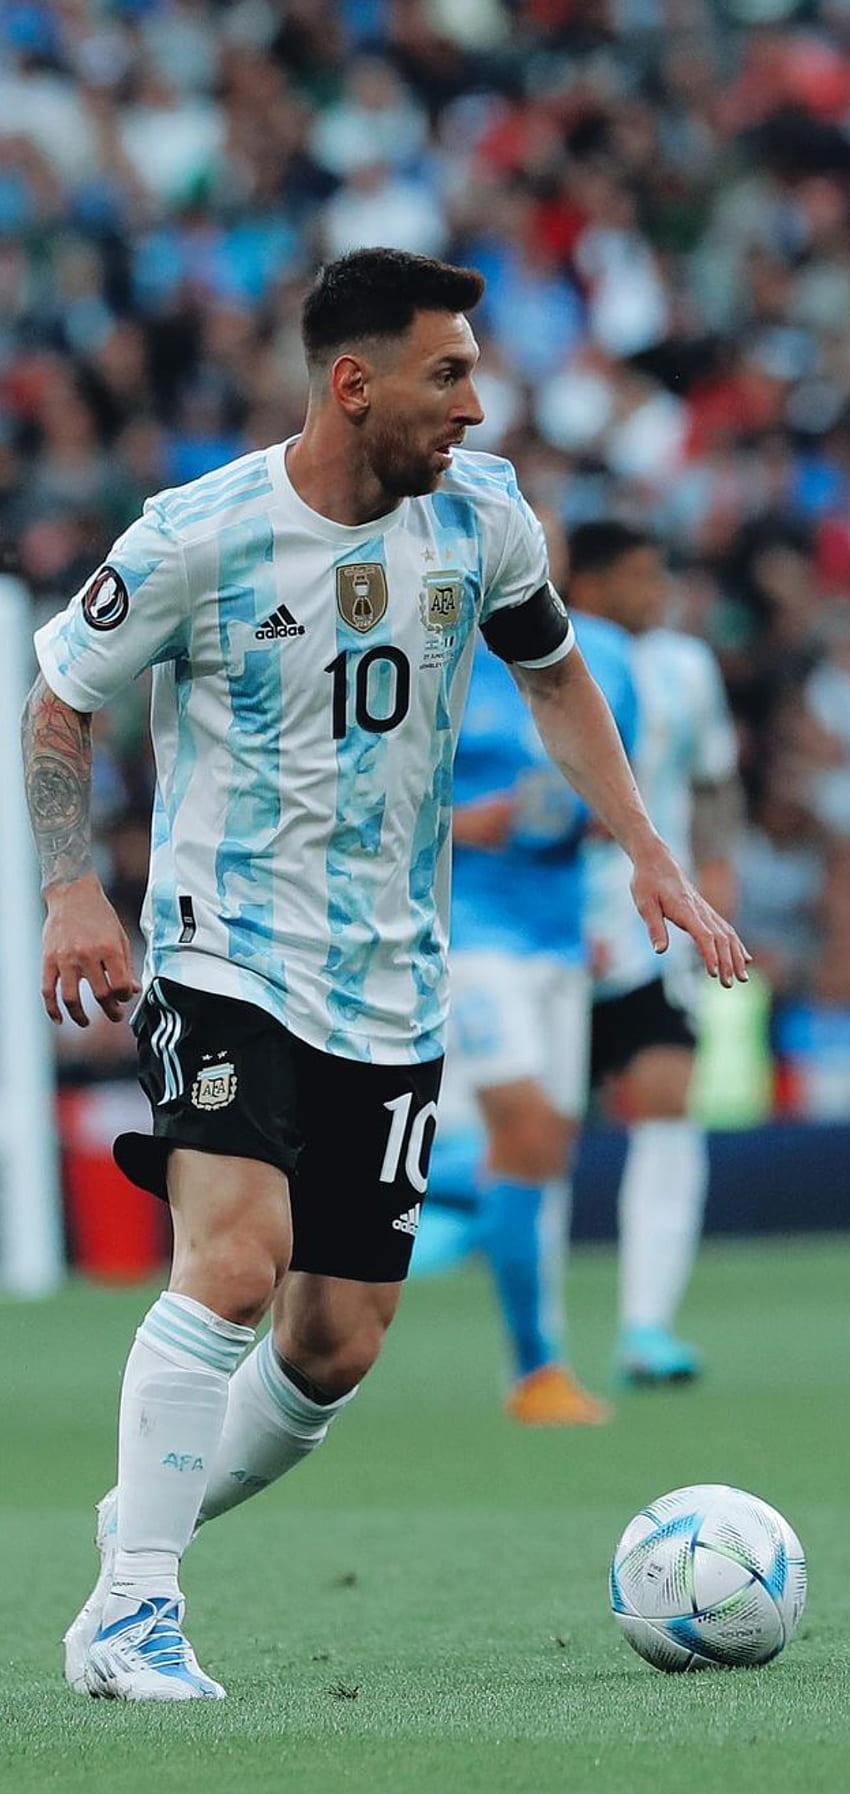 Argentina là một trong những đội bóng nổi tiếng nhất của thế giới, với một lượng người hâm mộ đông đảo. Hãy xem những hình ảnh đẹp về đội bóng này và cảm nhận niềm tự hào của người dân Argentina!